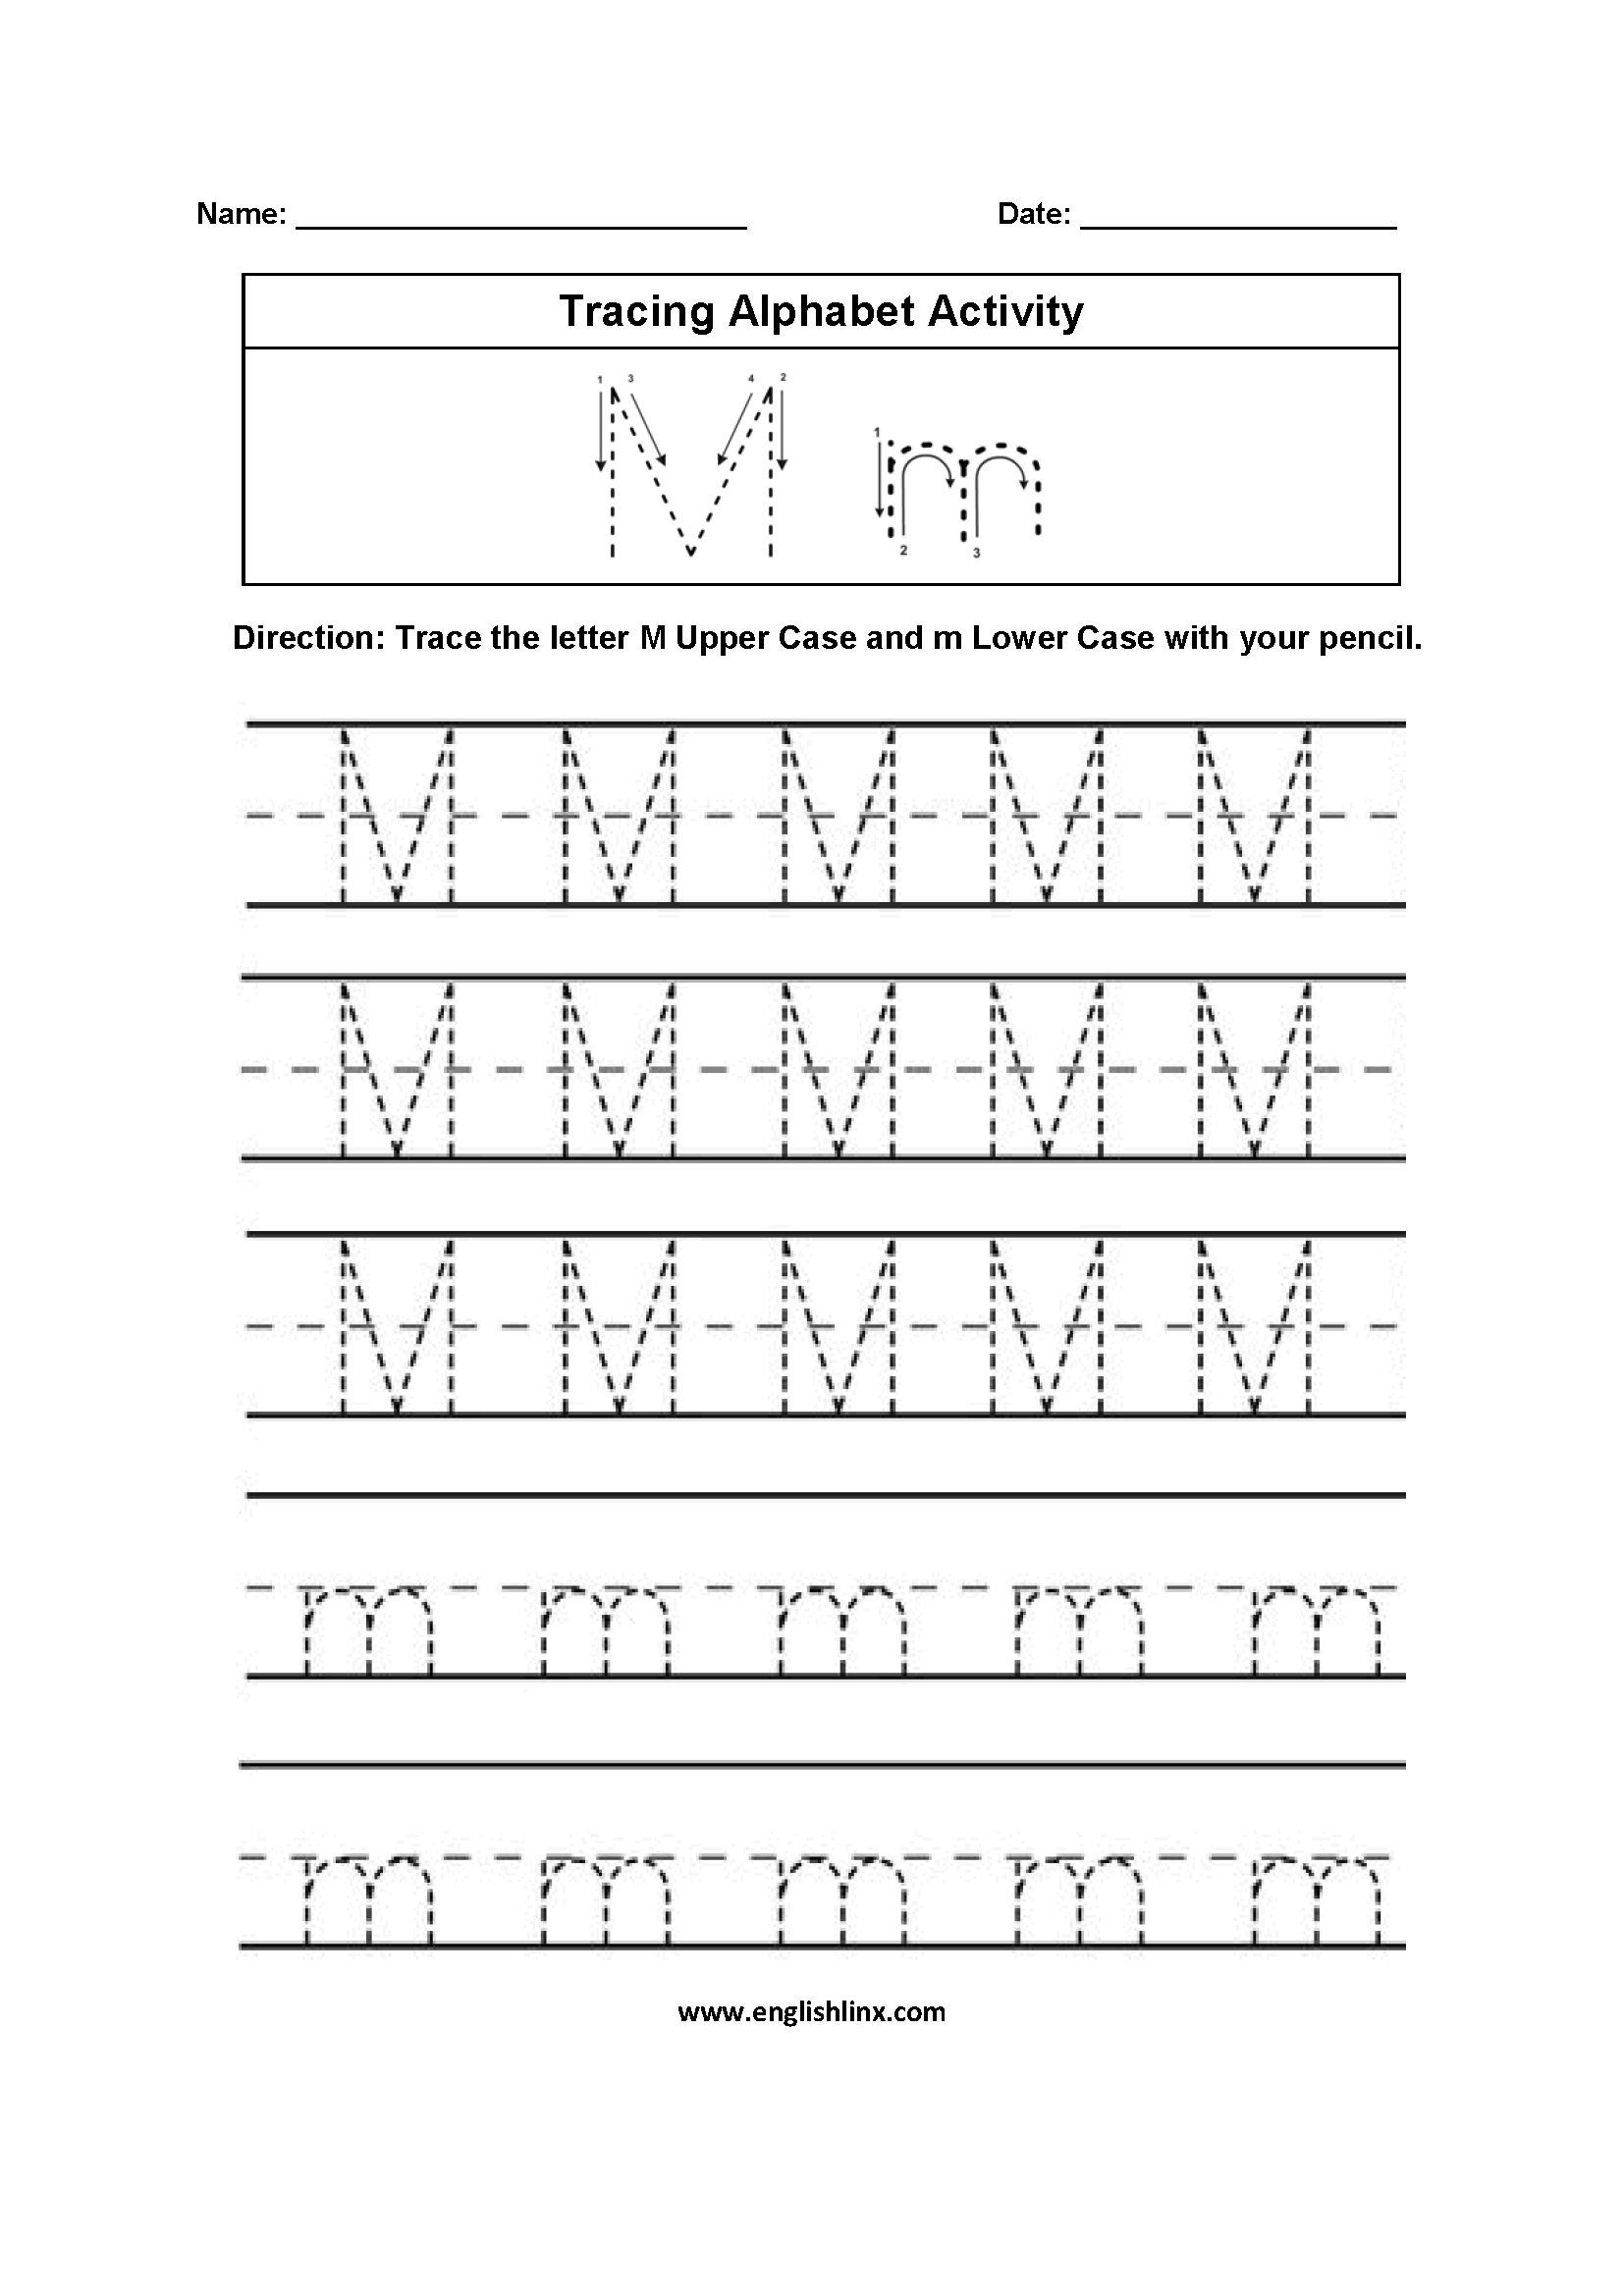 Letter M Tracing Alphabet Worksheets | Homeschool Worksheets with Letter M Tracing Preschool